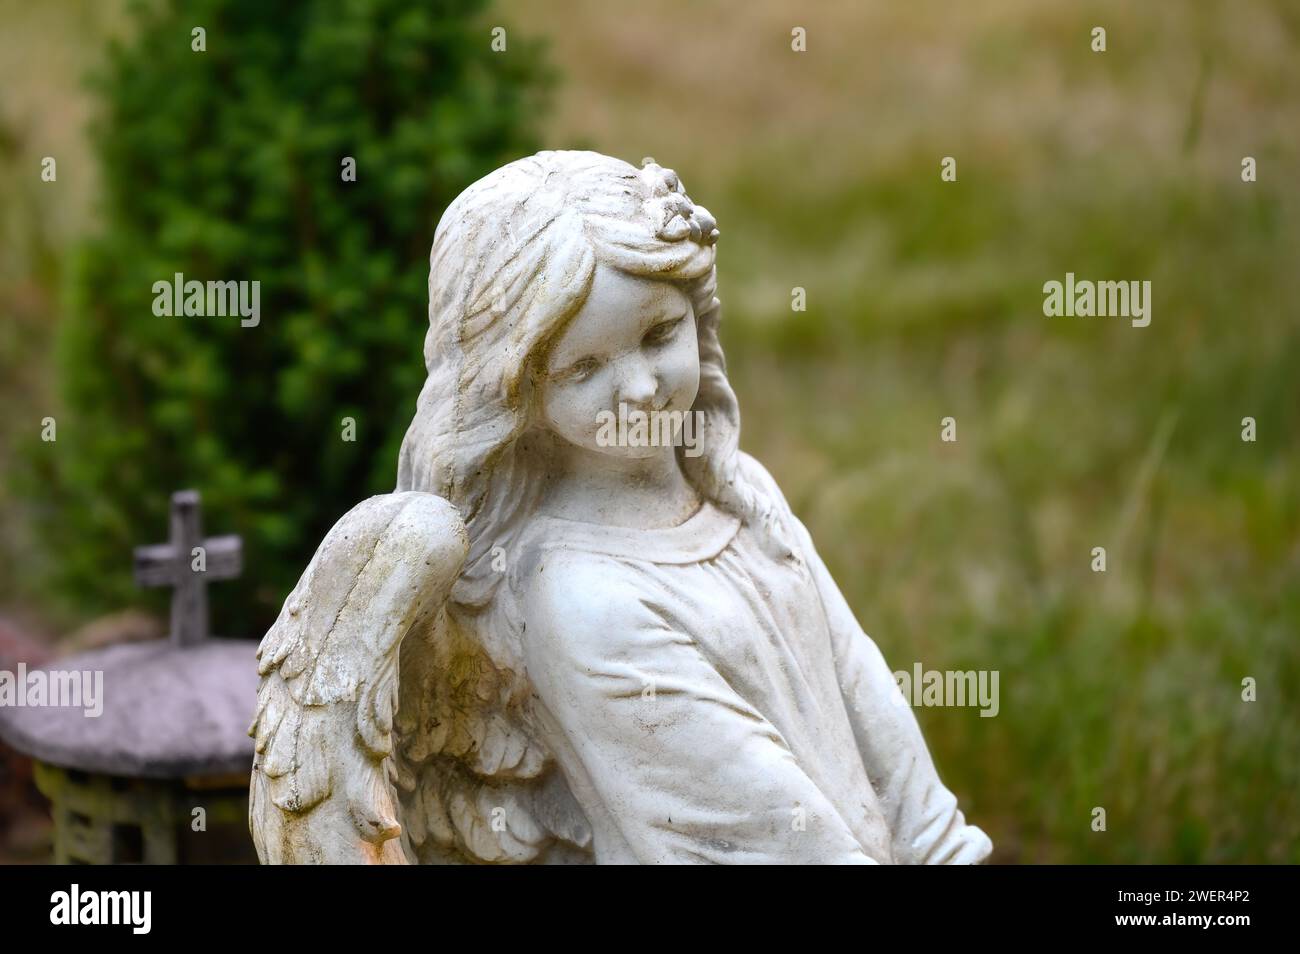 Statua di angelo simile a un bambino in una tomba Foto Stock